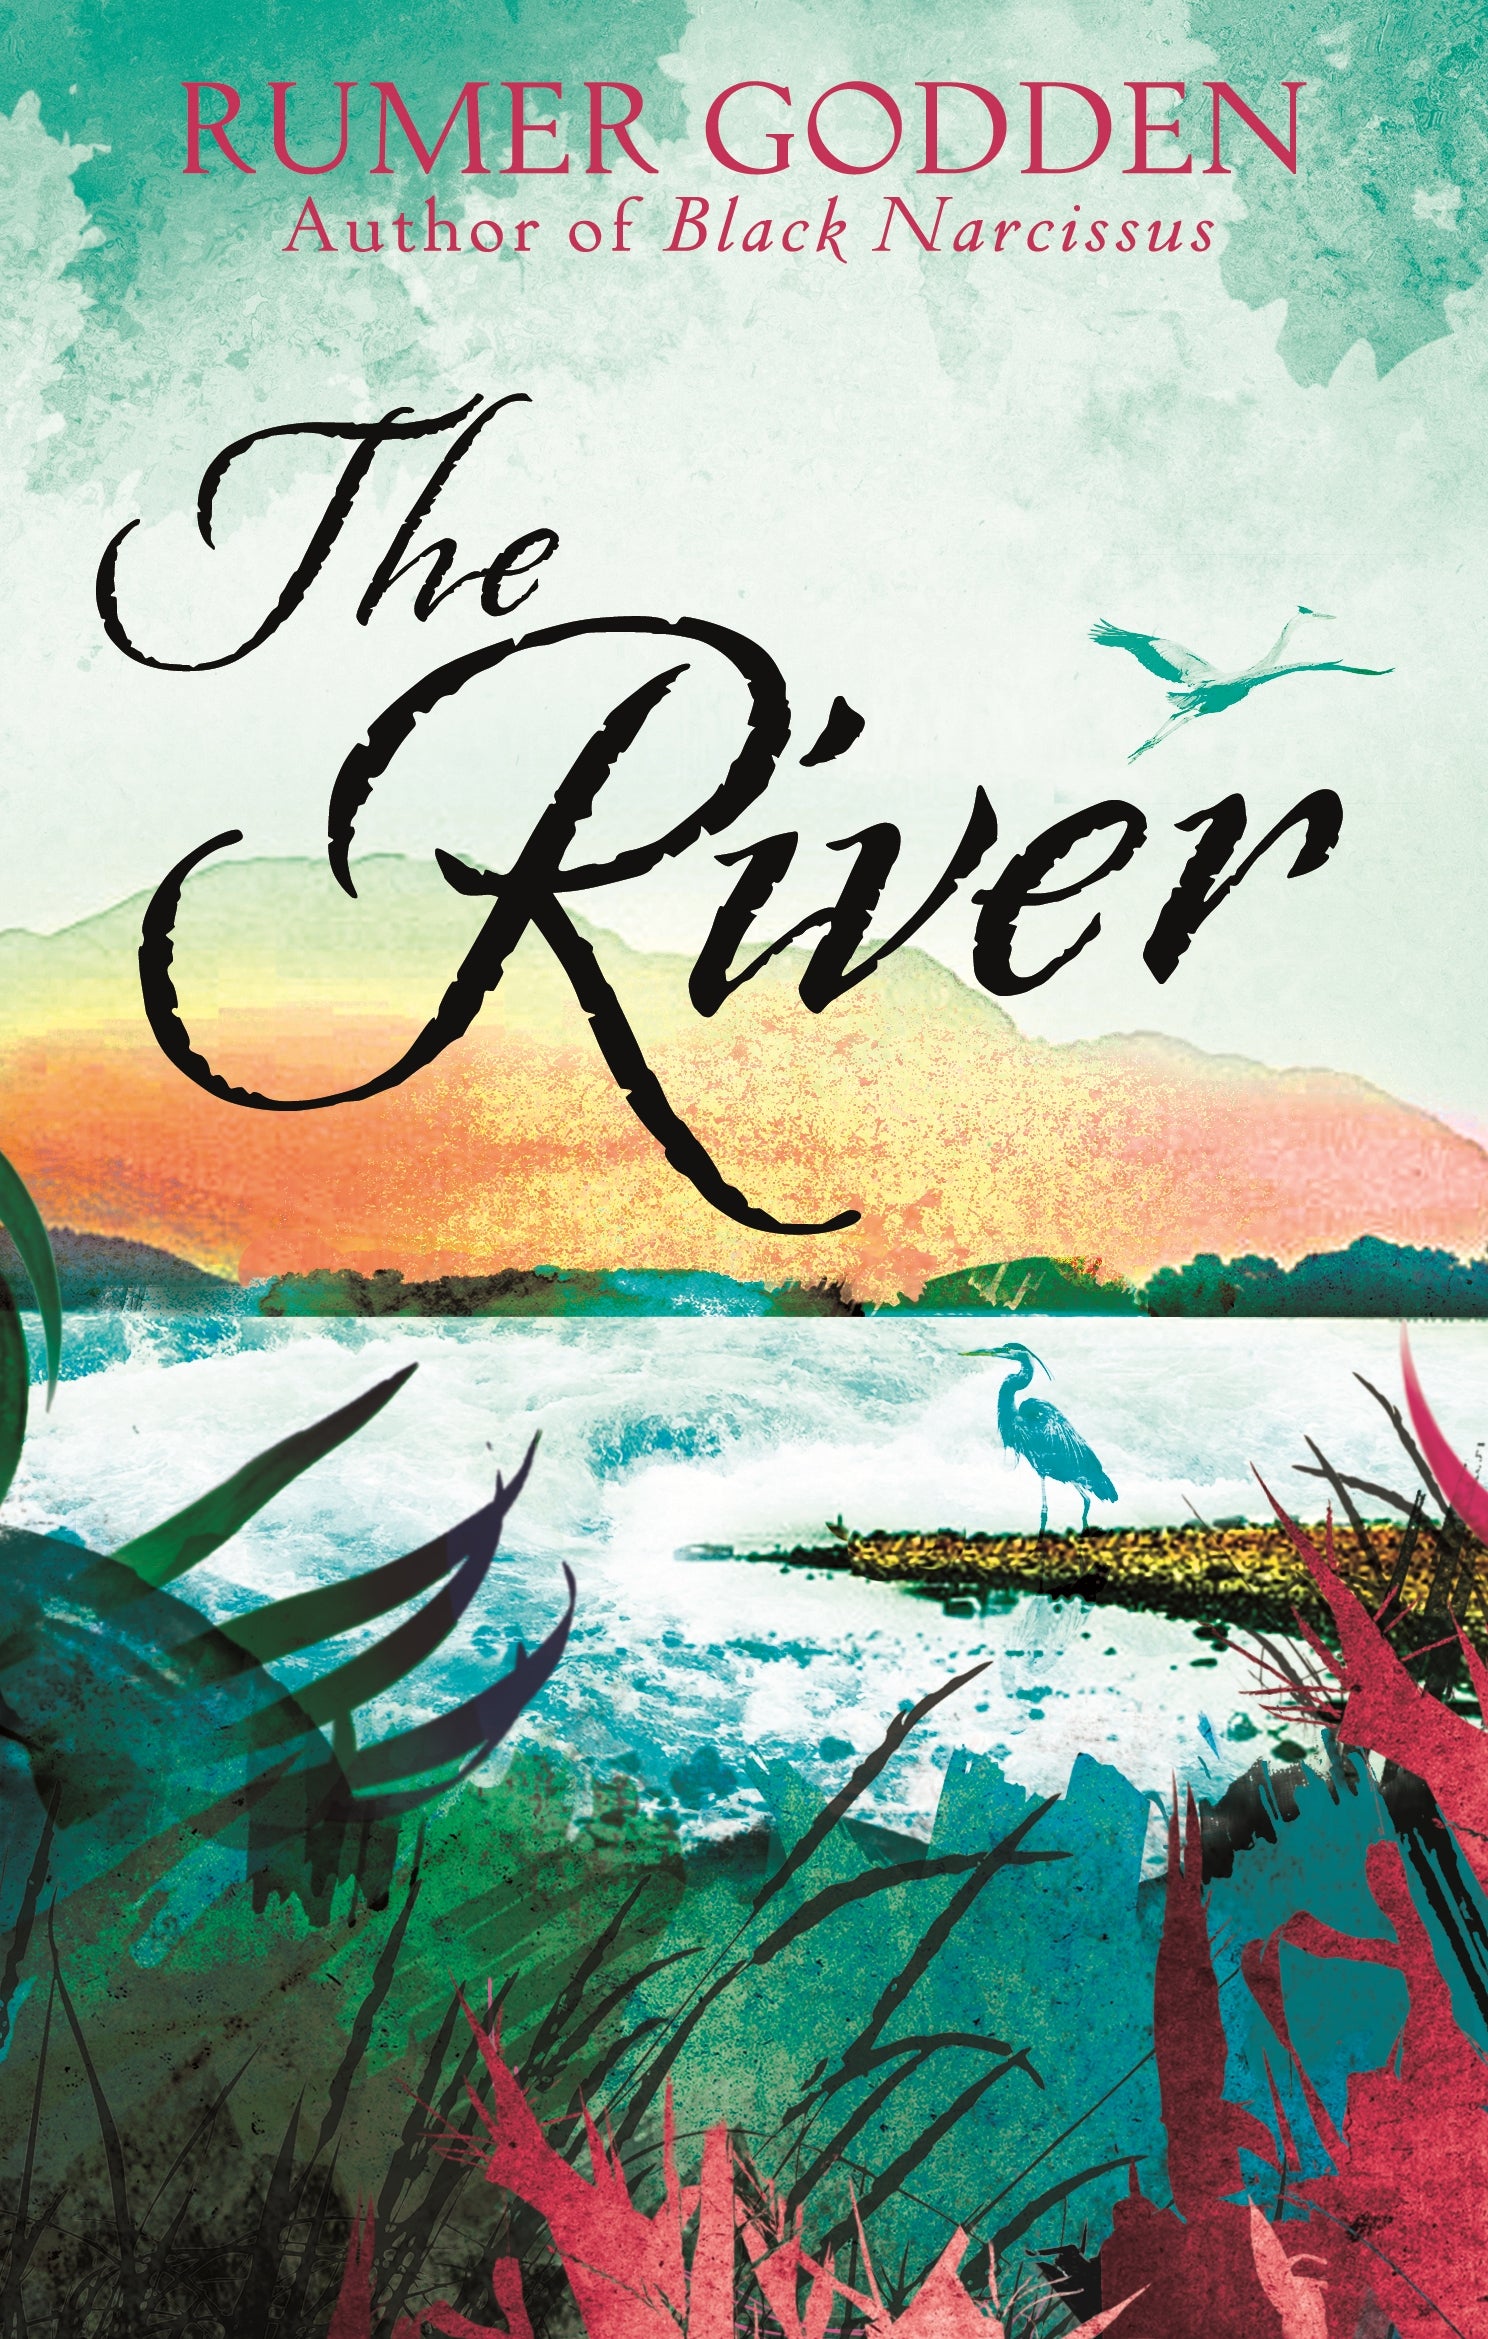 The River by Rumer Godden